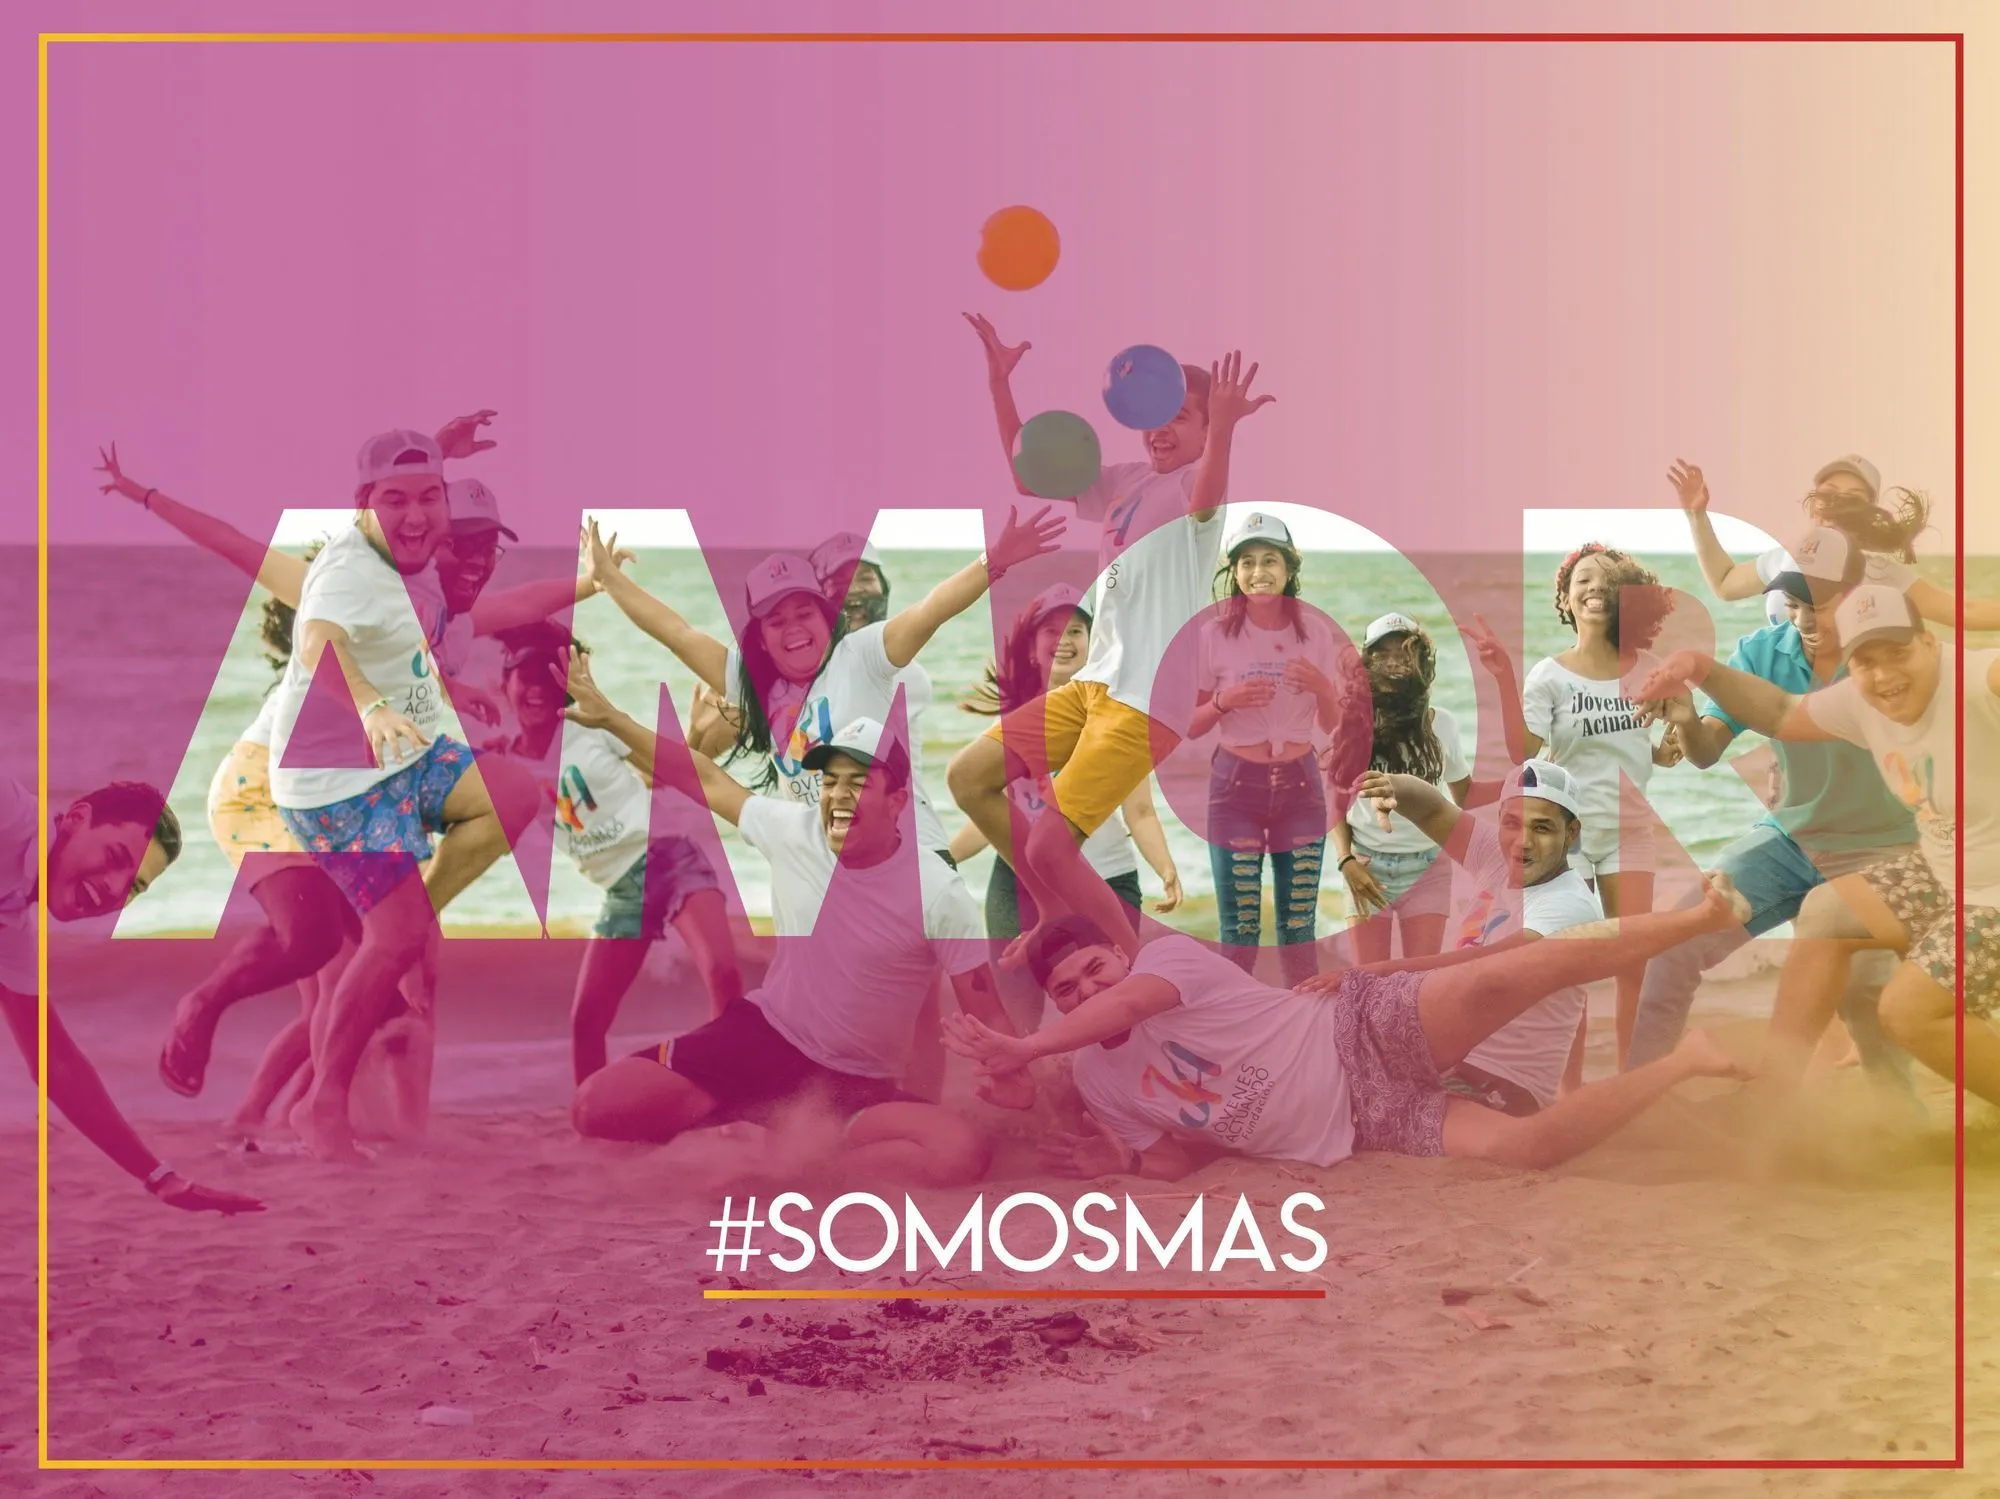 Campaña #somosmas, Fundación Jóvenes Actuando, 2018.